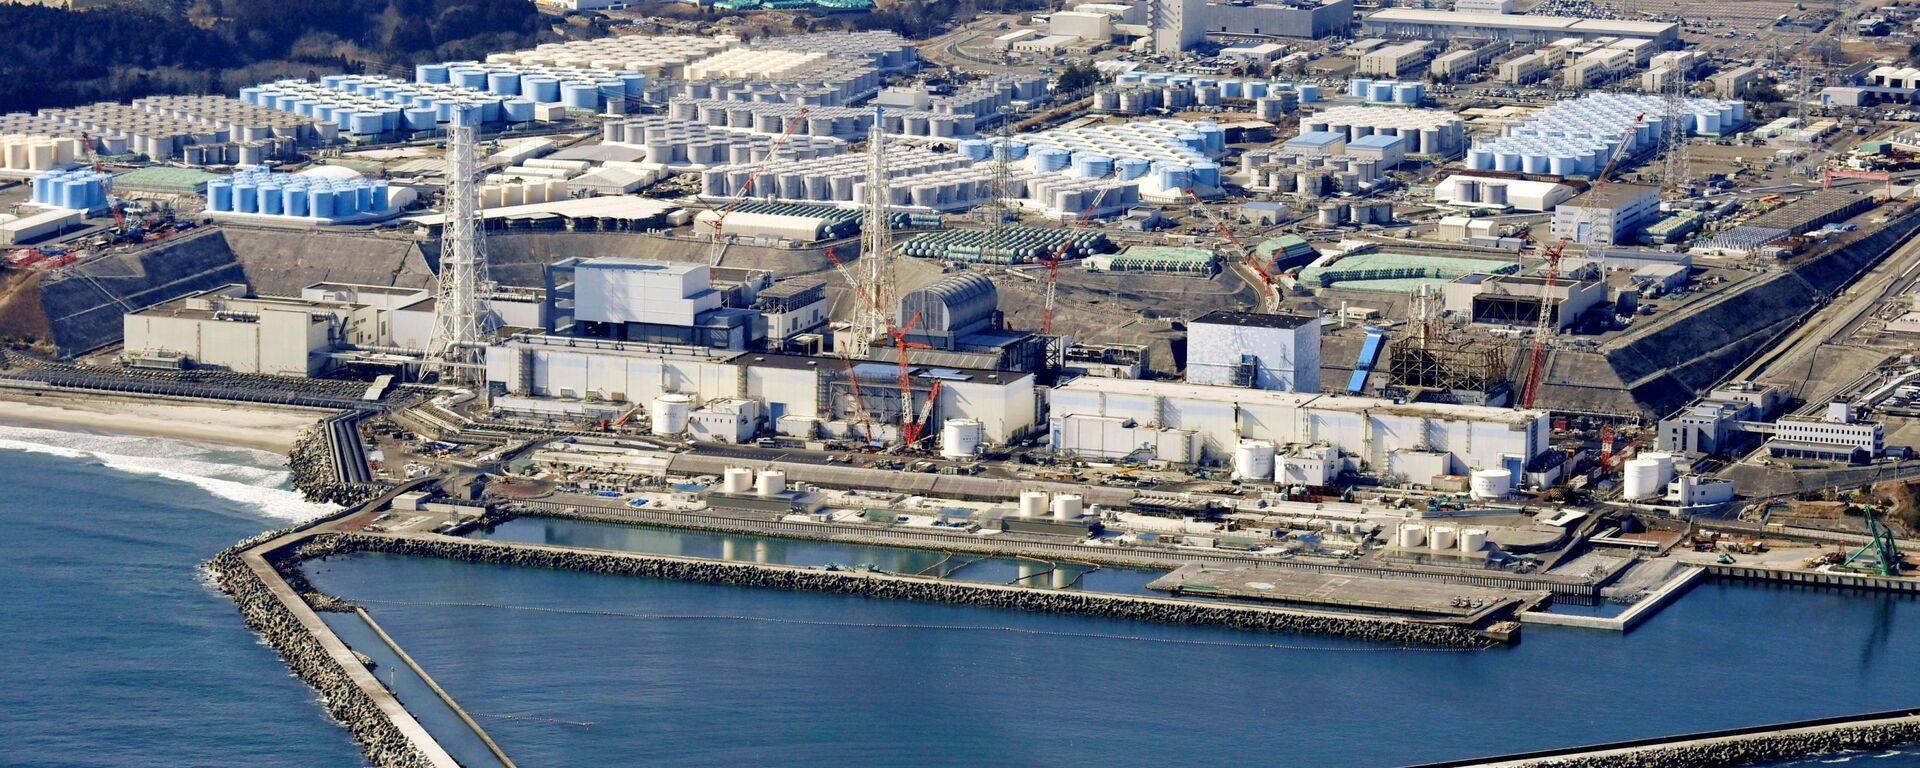 福岛核污水处理系统故障频发